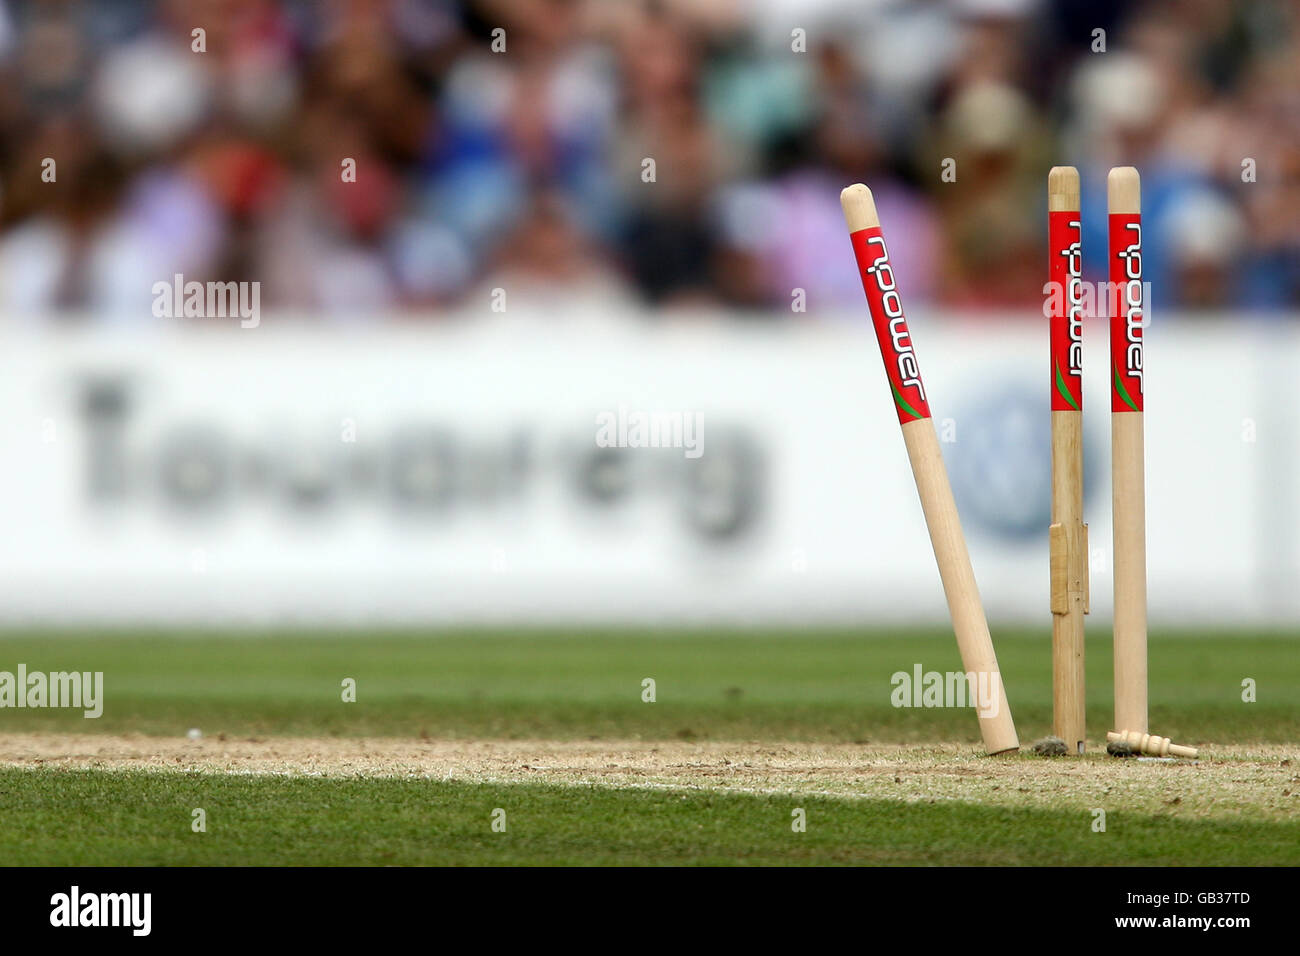 Cricket - quatrième test de npower - quatrième jour - Angleterre contre Afrique du Sud - le Brit Oval.Vue générale des portes batches sponsorisées par npower brisées après qu'un batteur ait été bien coupé Banque D'Images